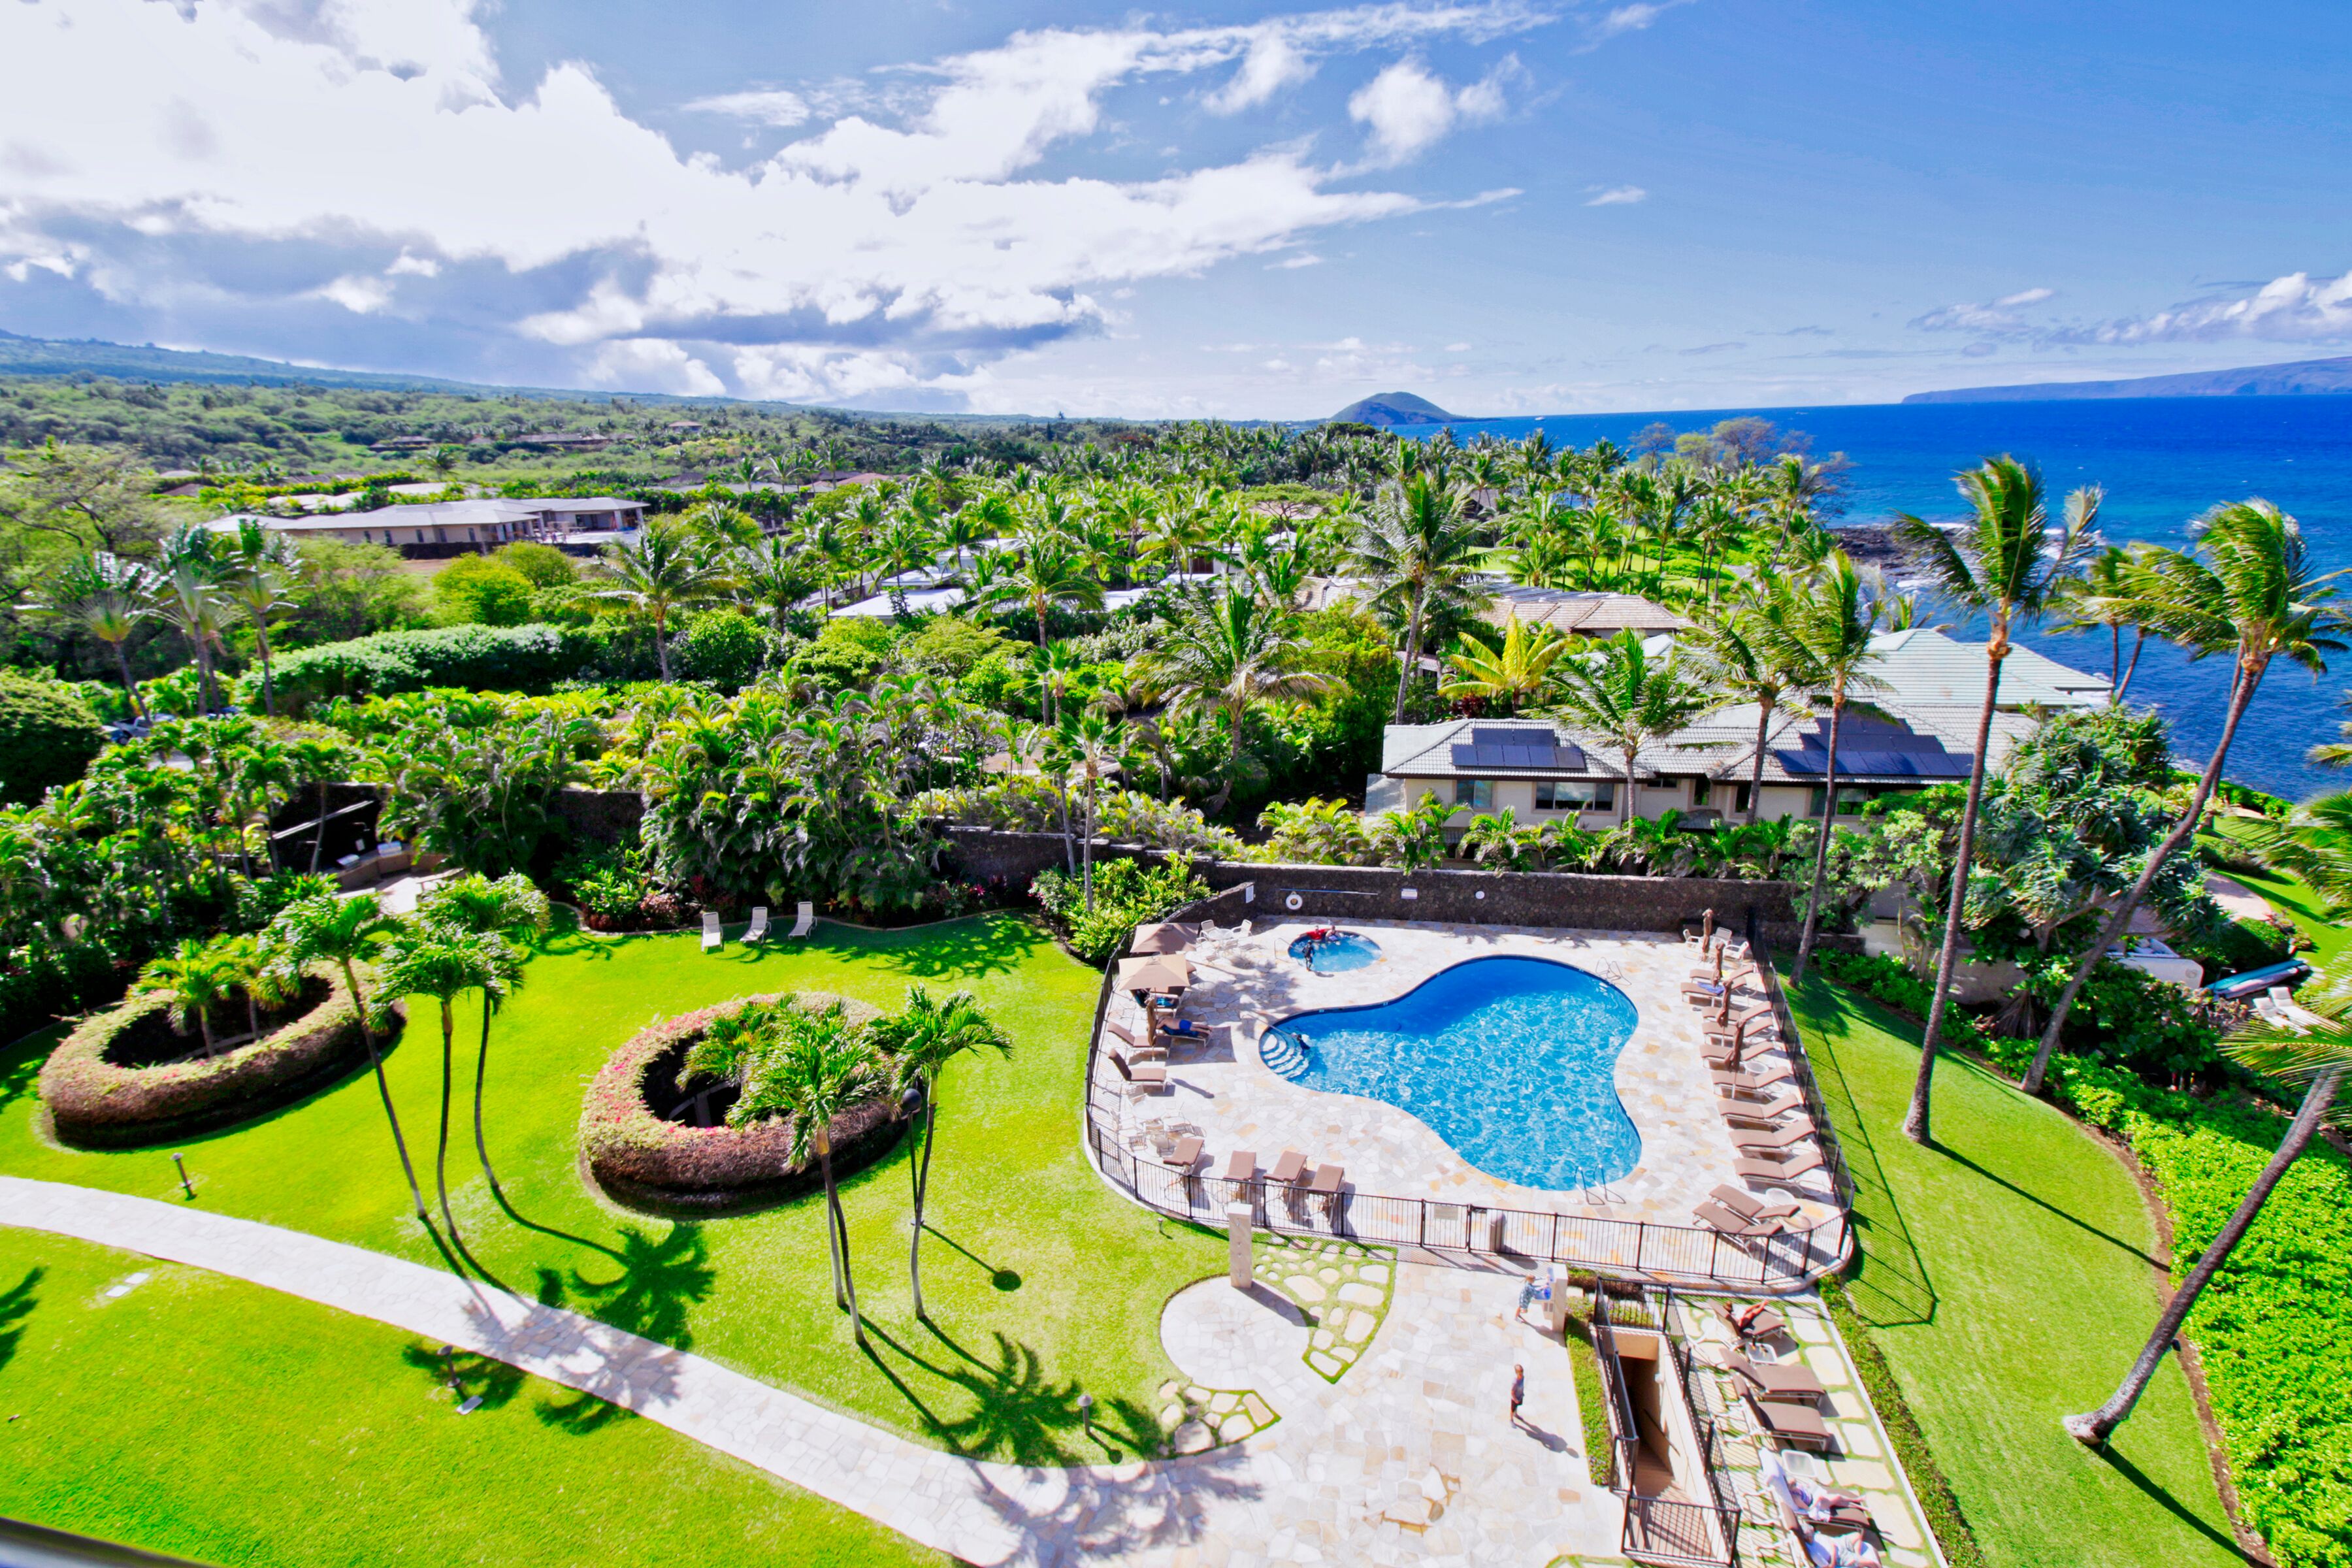 Polo Beach Club Maui - Maui Real Estate